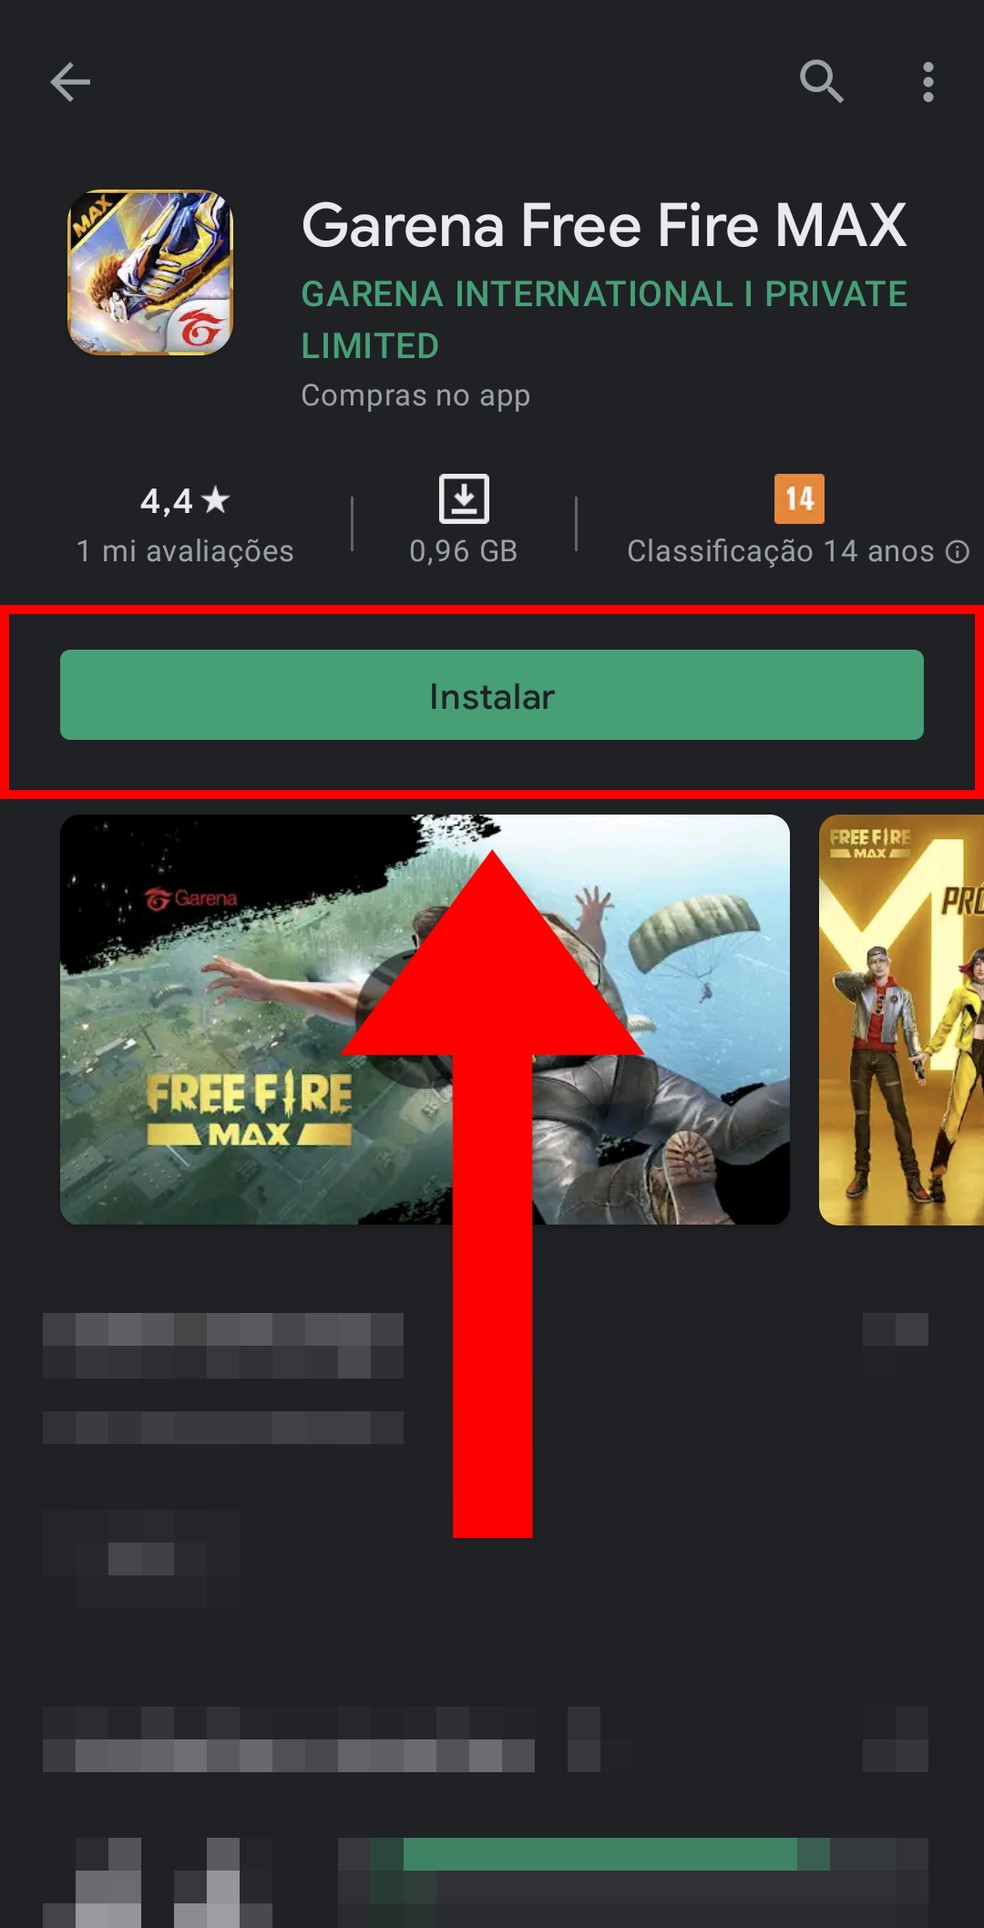 Download Free Fire Max: como baixar o jogo no Android e iOS, free fire